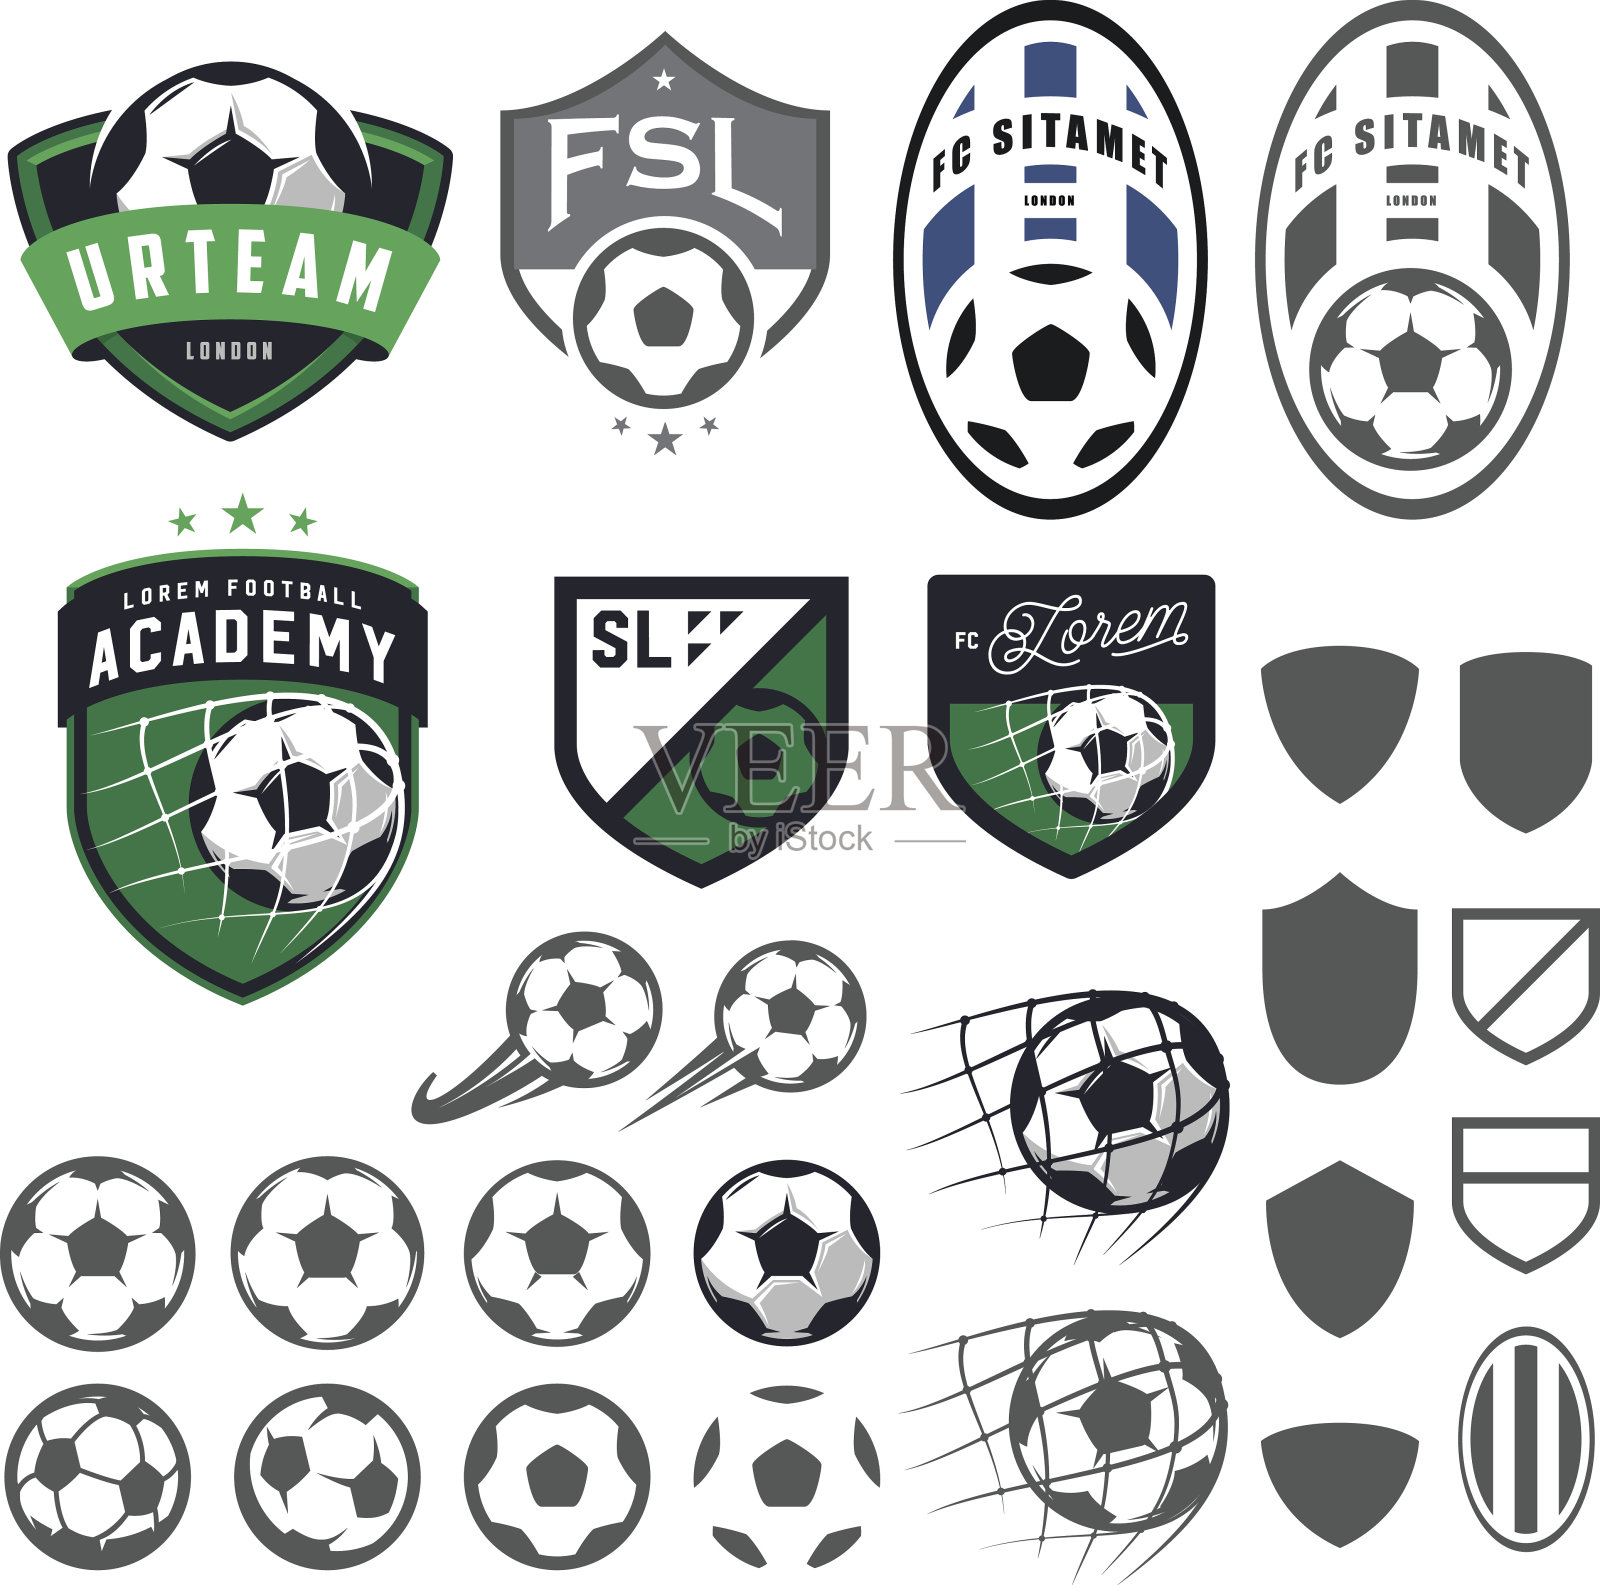 集足球、足球会徽等设计元素插画图片素材